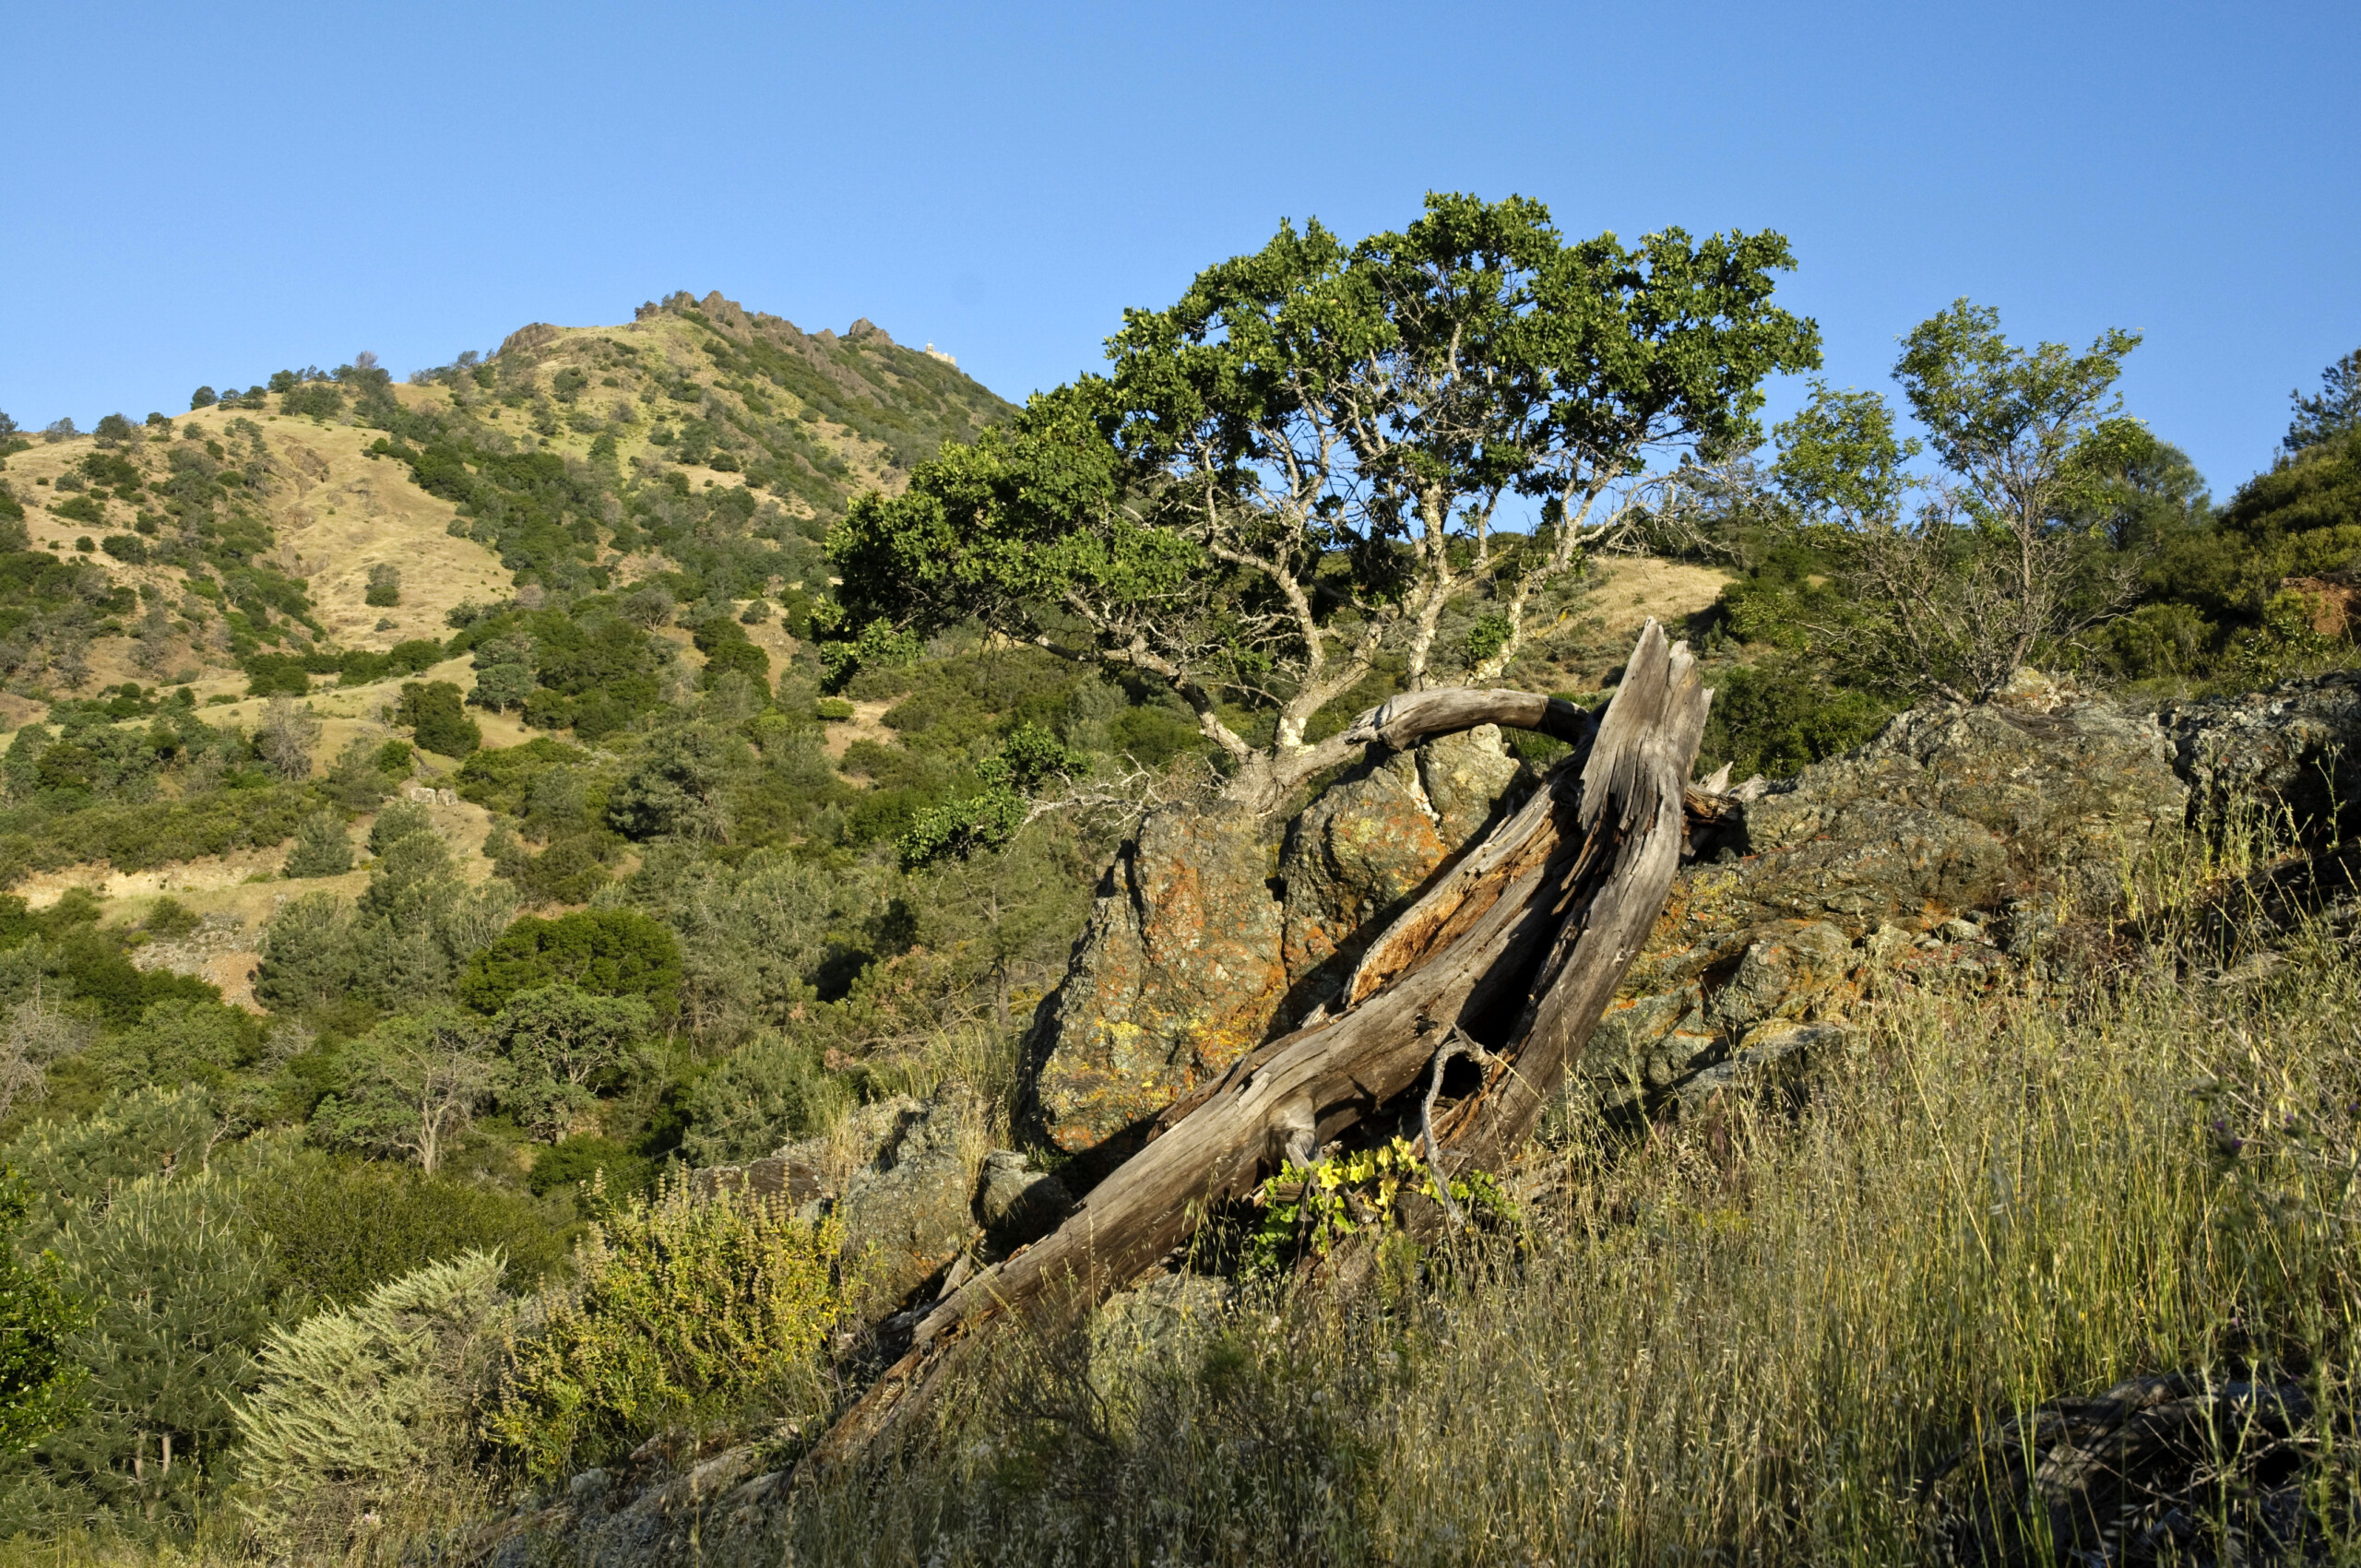 Fallen tree and serpentine rock at Viera North Peak